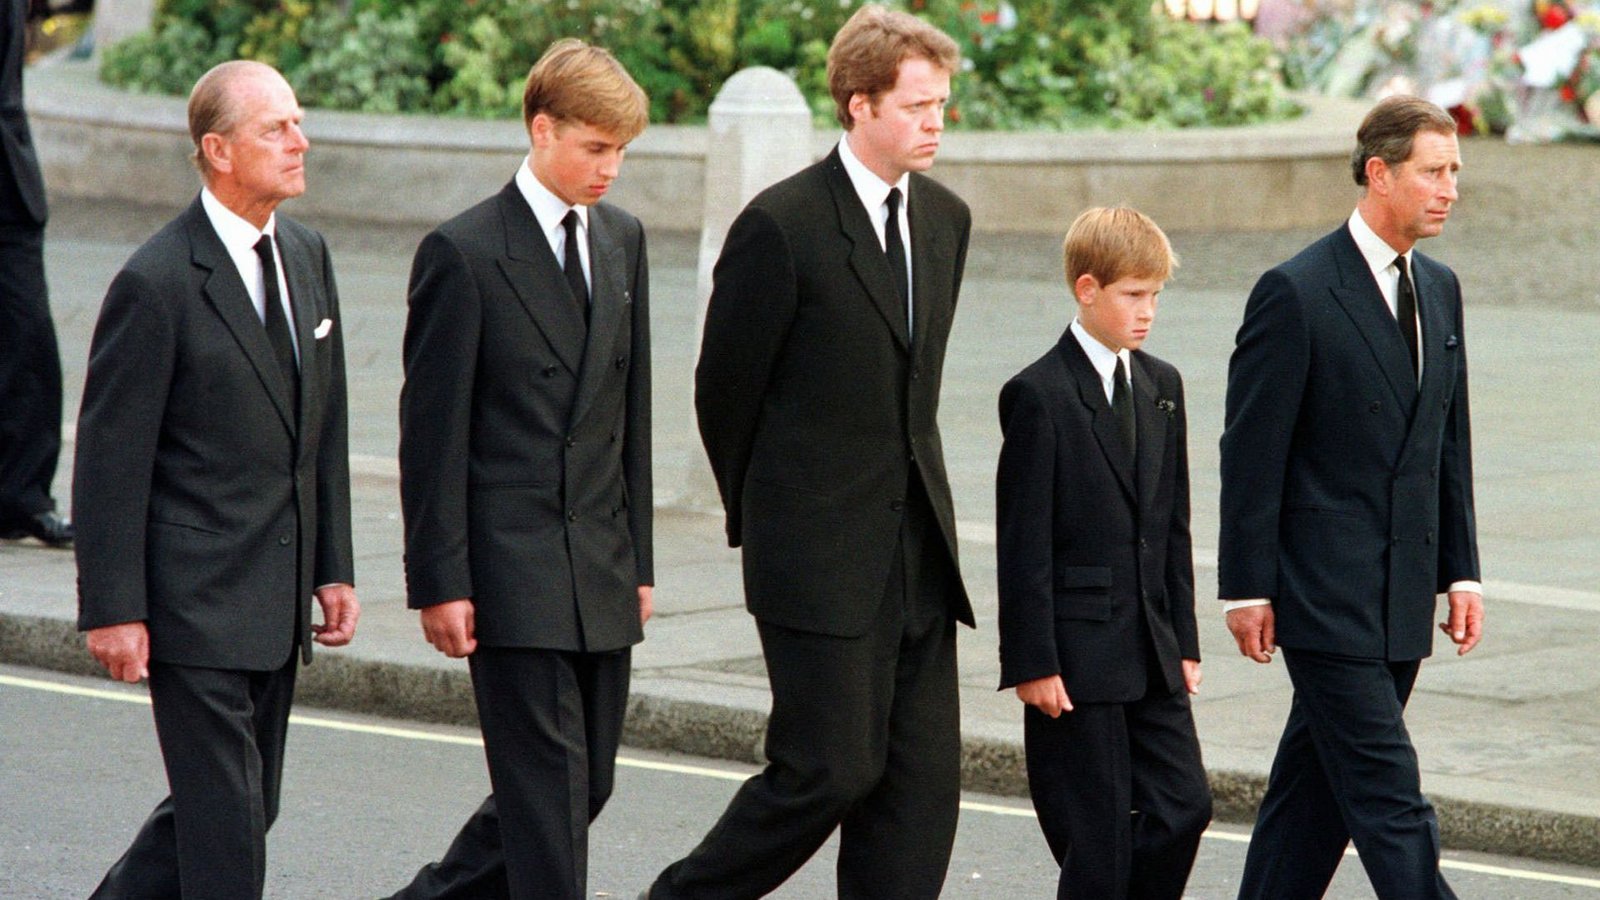 Ganz Großbritannien sorgt sich um die jungen Prinzen. Wie es in den Jungen nach dem Tod ihrer geliebten Mutter aussieht, weiß kaum jemand.Foto: dpa/Jeff J Mitchell